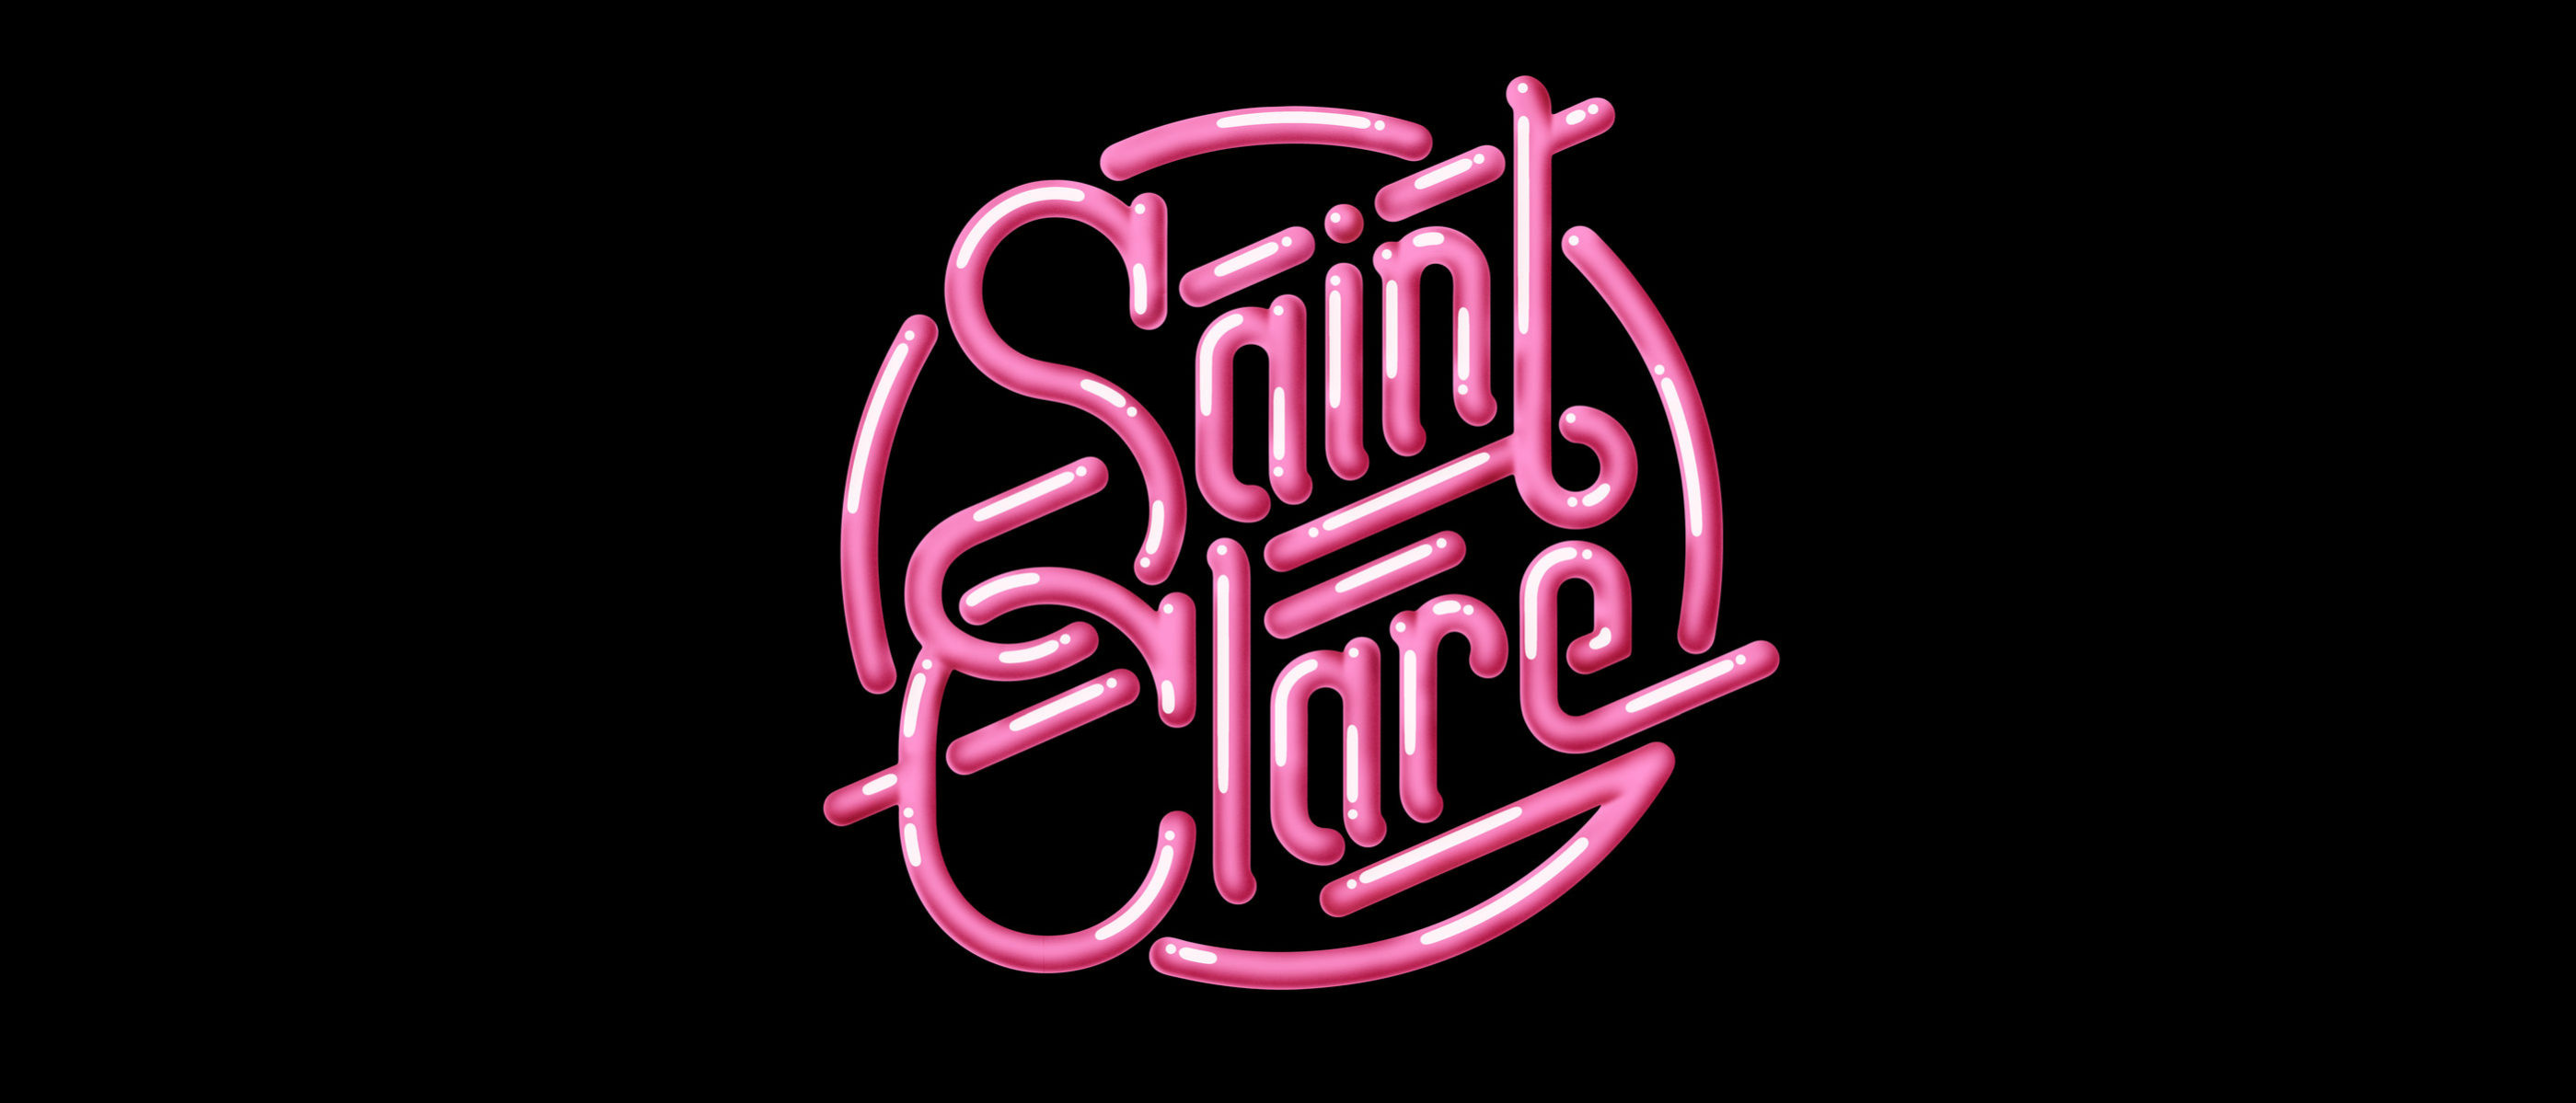 saint clare